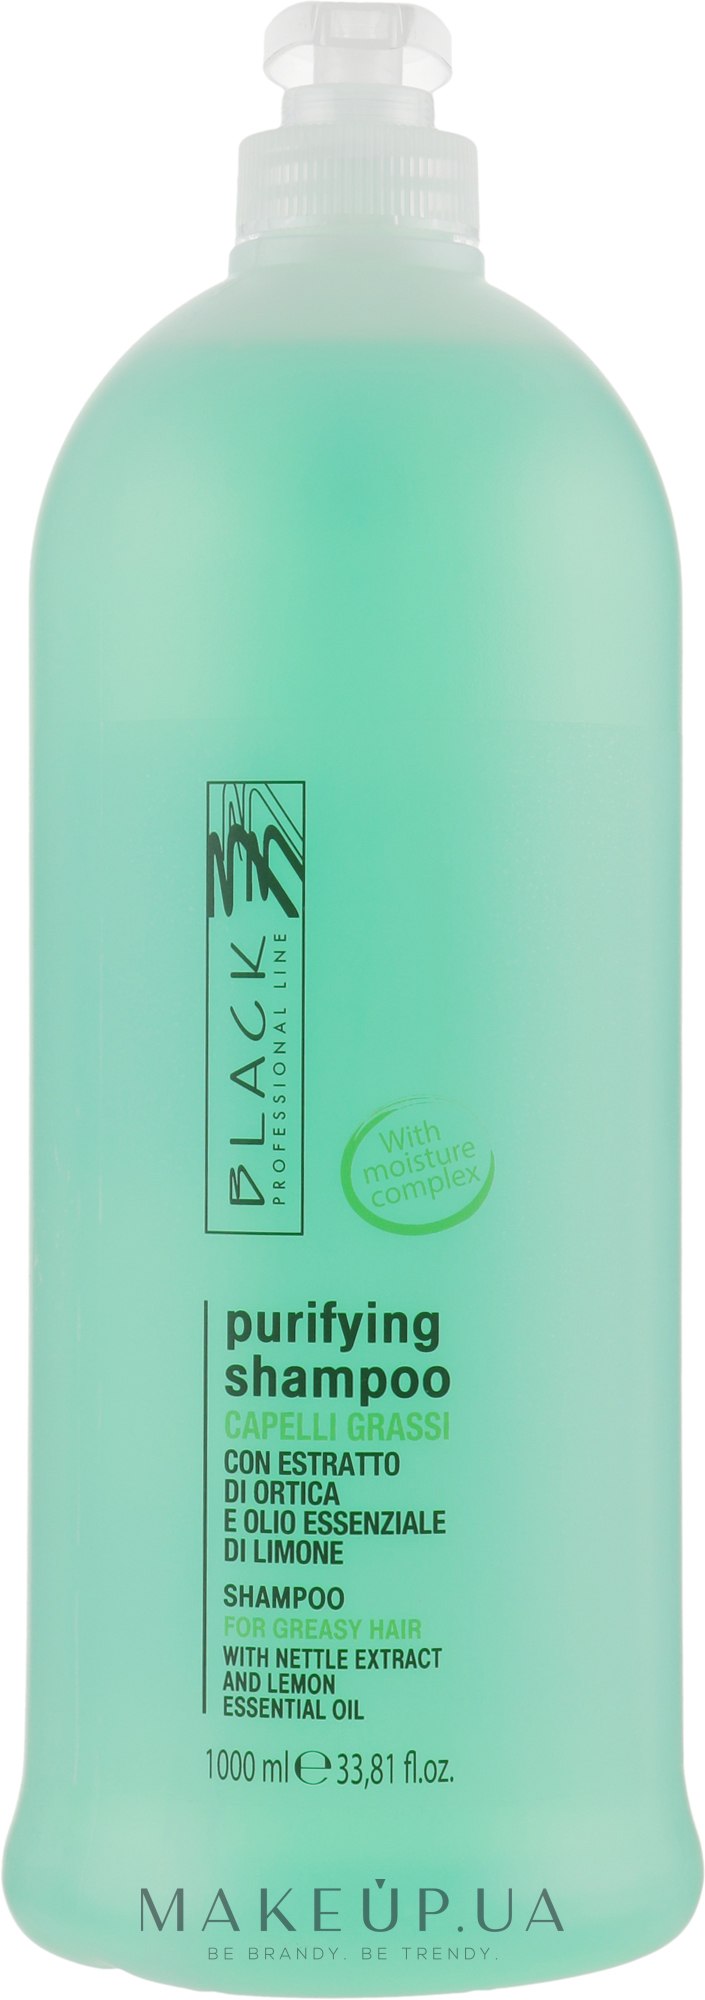 Нормалізувальний шампунь для жирного волосся - Black Professional Sebum-Balancing Shampoo — фото 1000ml